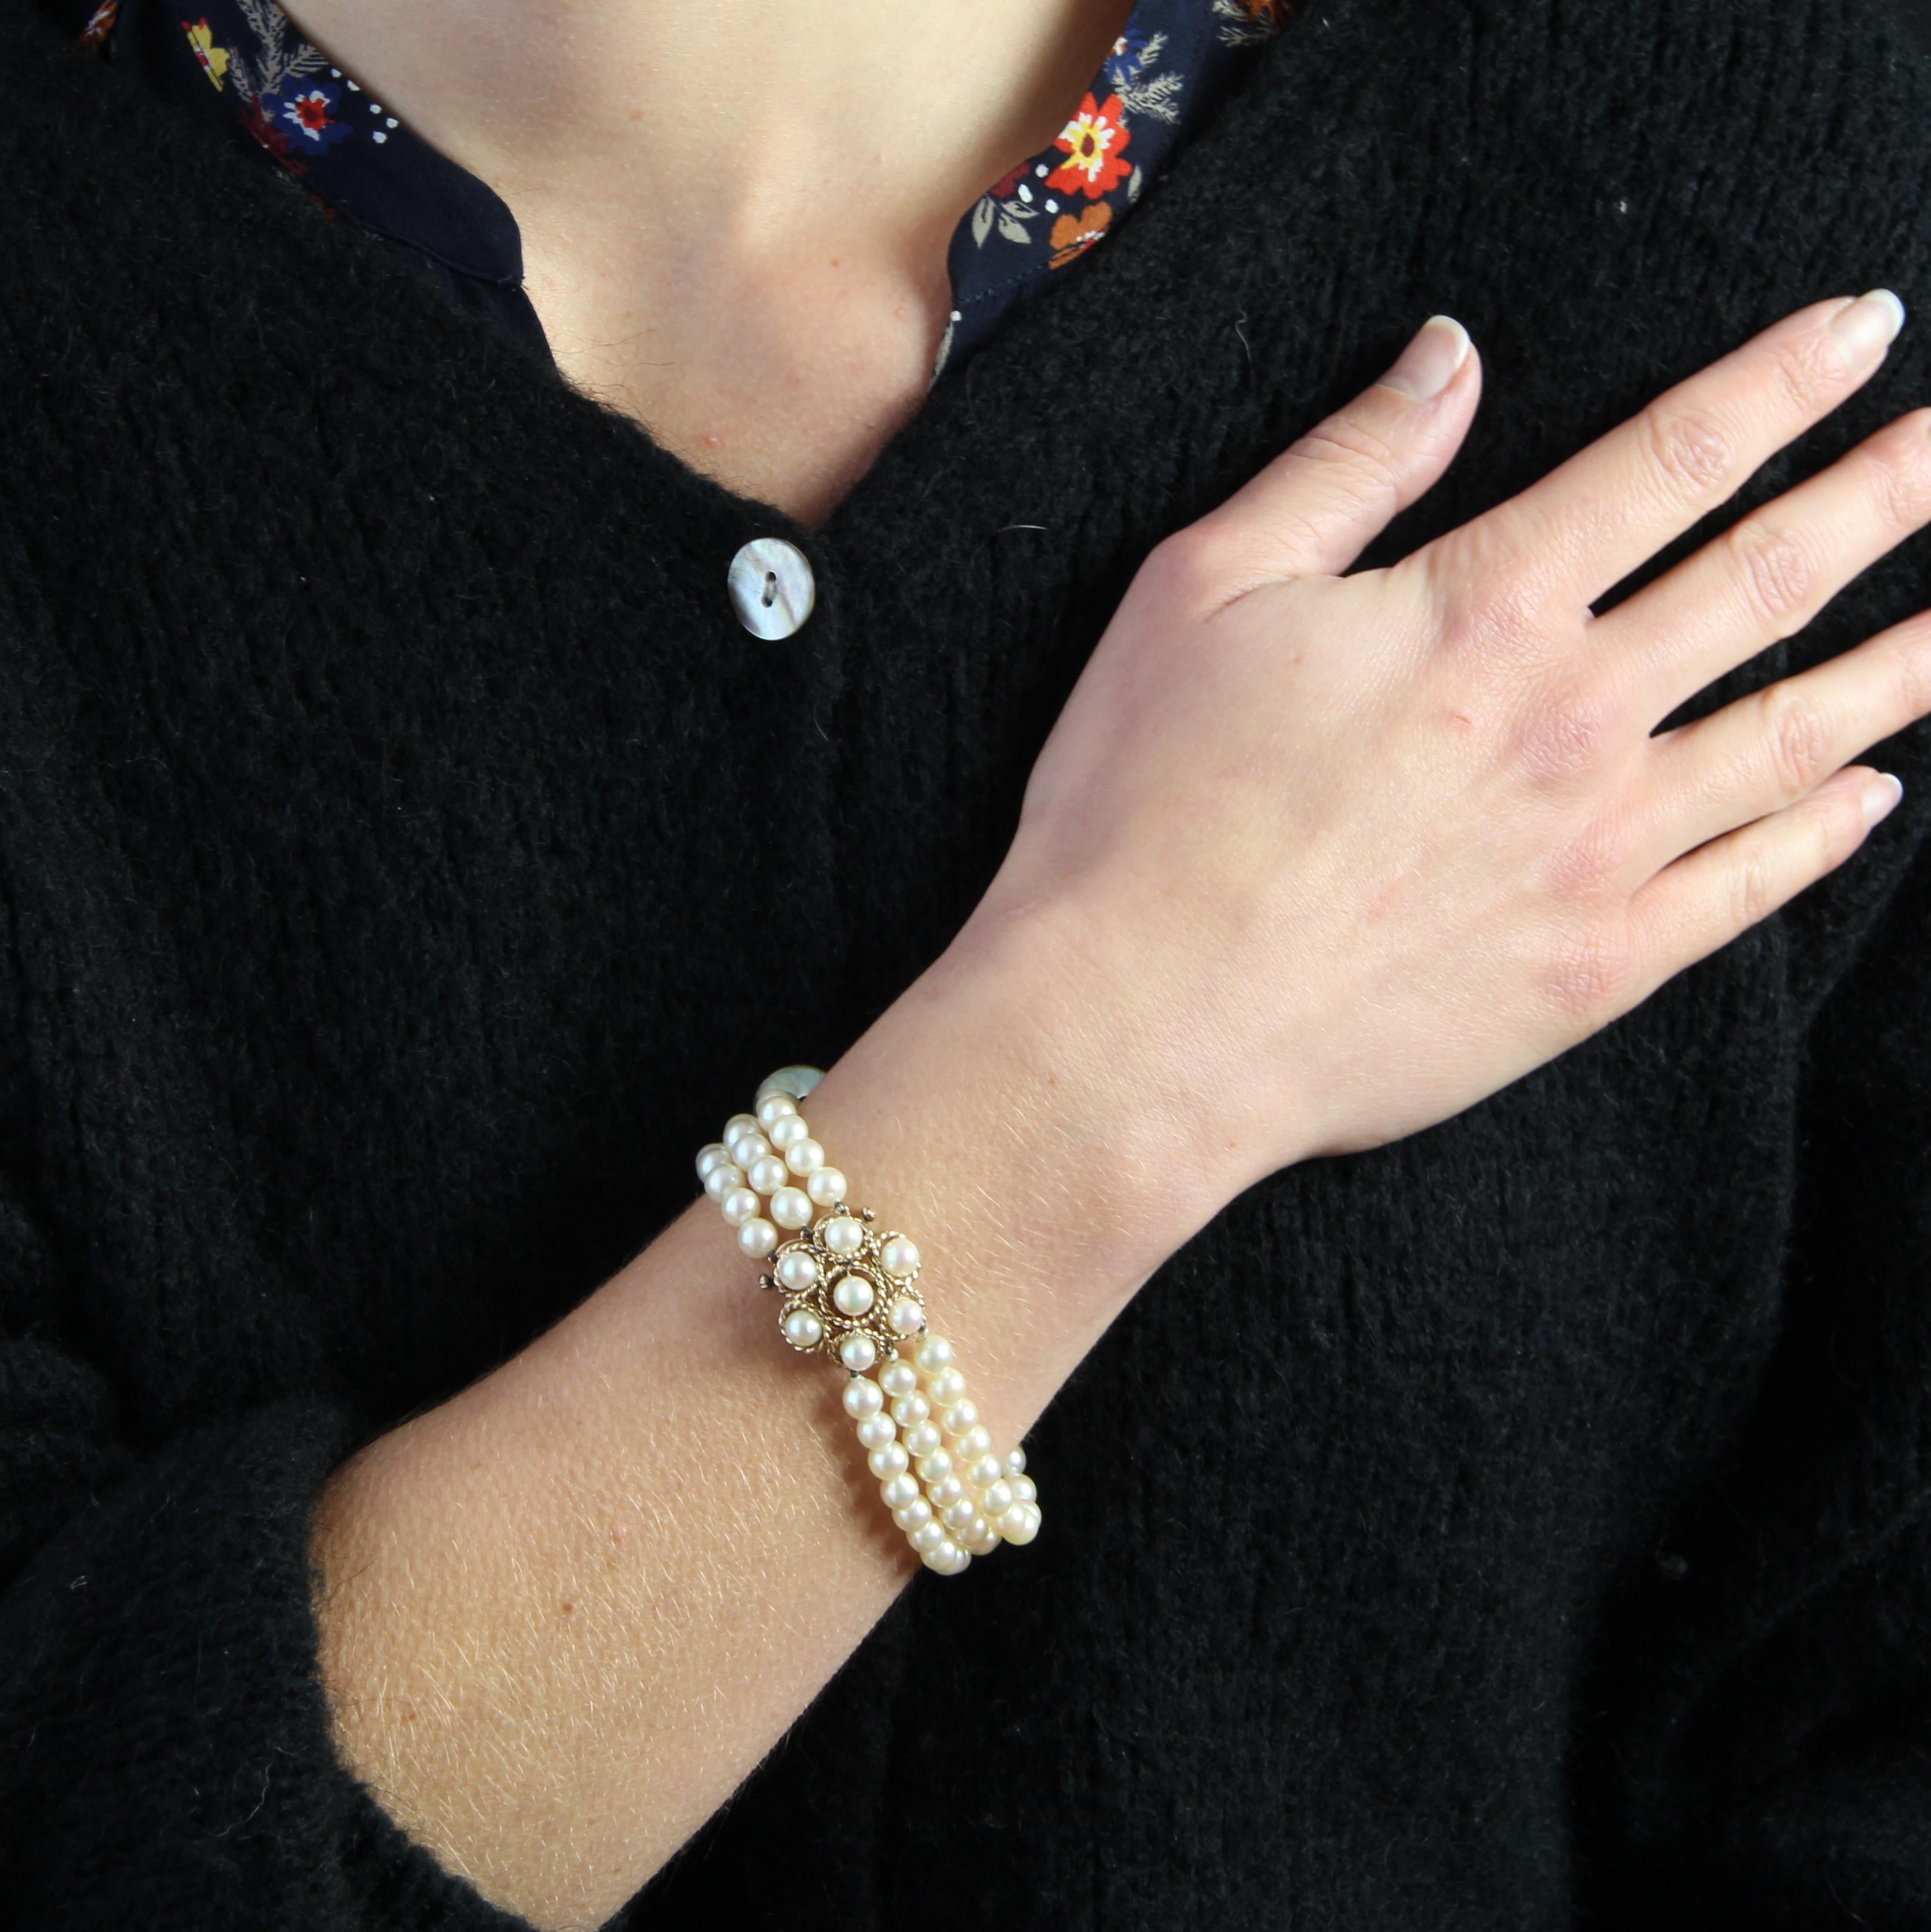 Armband, bestehend aus 3 Reihen weißer Orient-Zuchtperlen, der Verschluss ist ein blumenförmiges Muster aus Goldschnur und mit 7 Perlen verziert, die zu denen des Armbands passen. Die Schließe ist mit einer Ratsche versehen.
Durchmesser der Perlen: